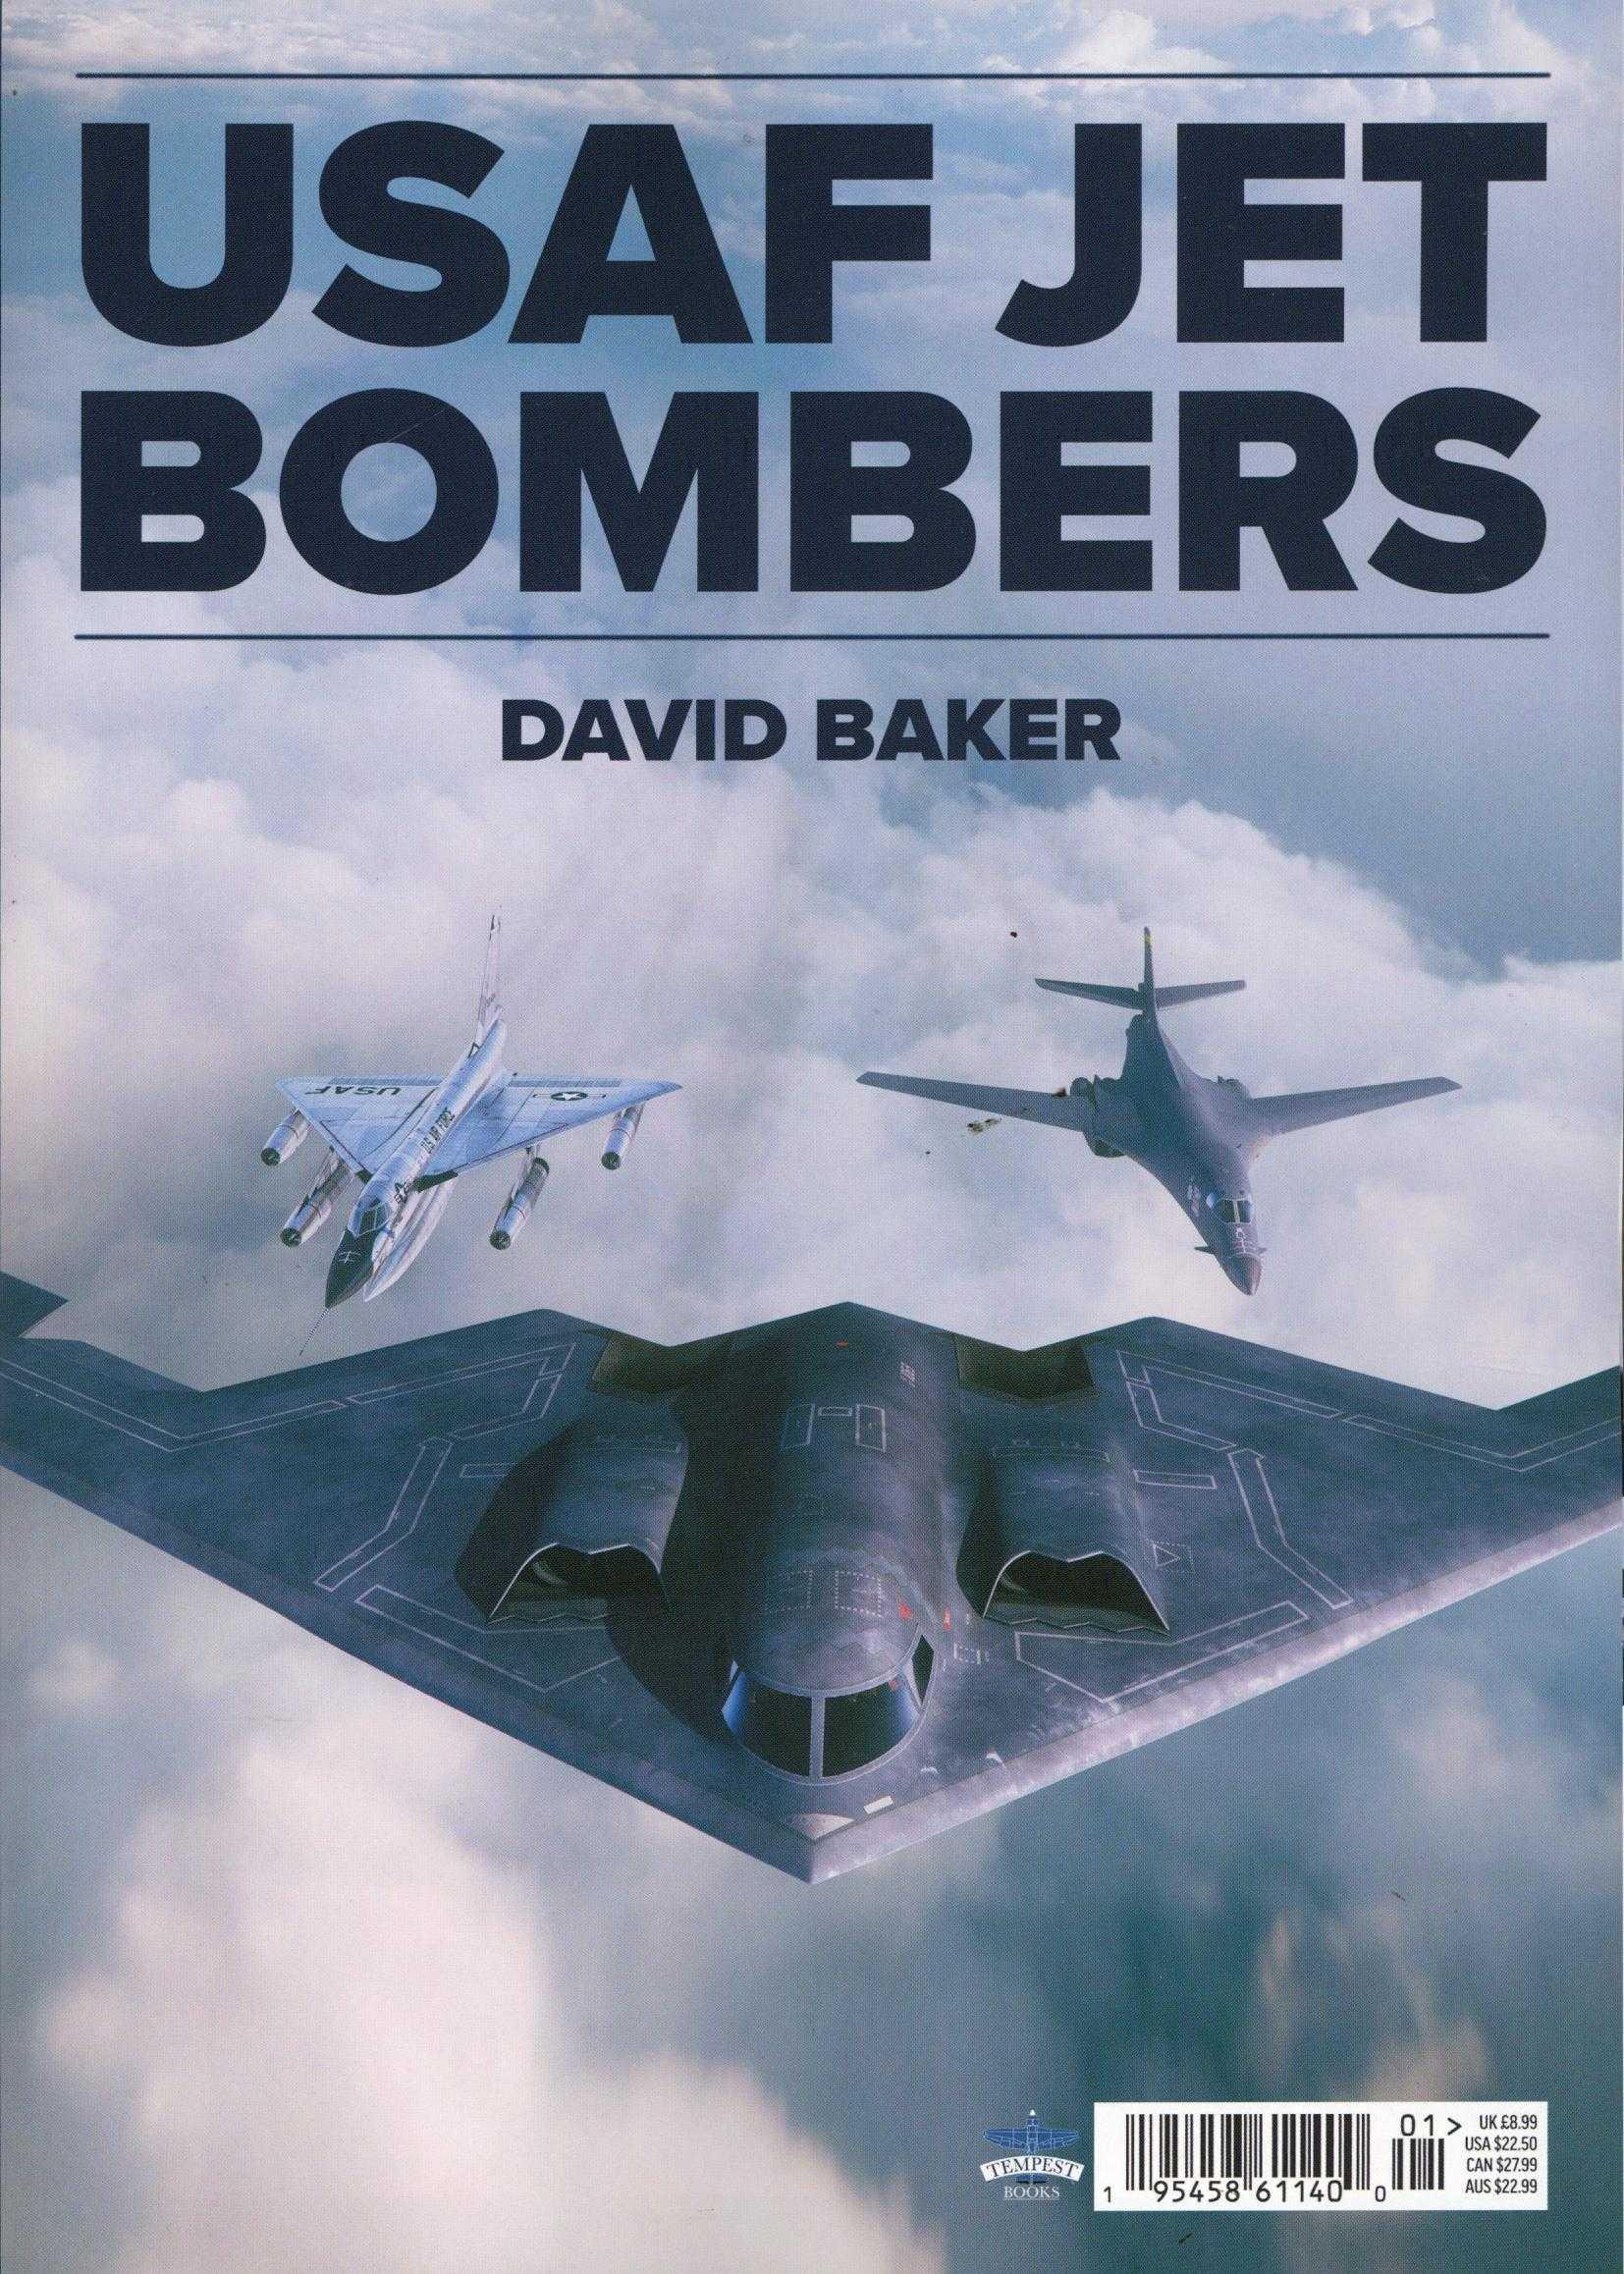 USAF Jet Bombers